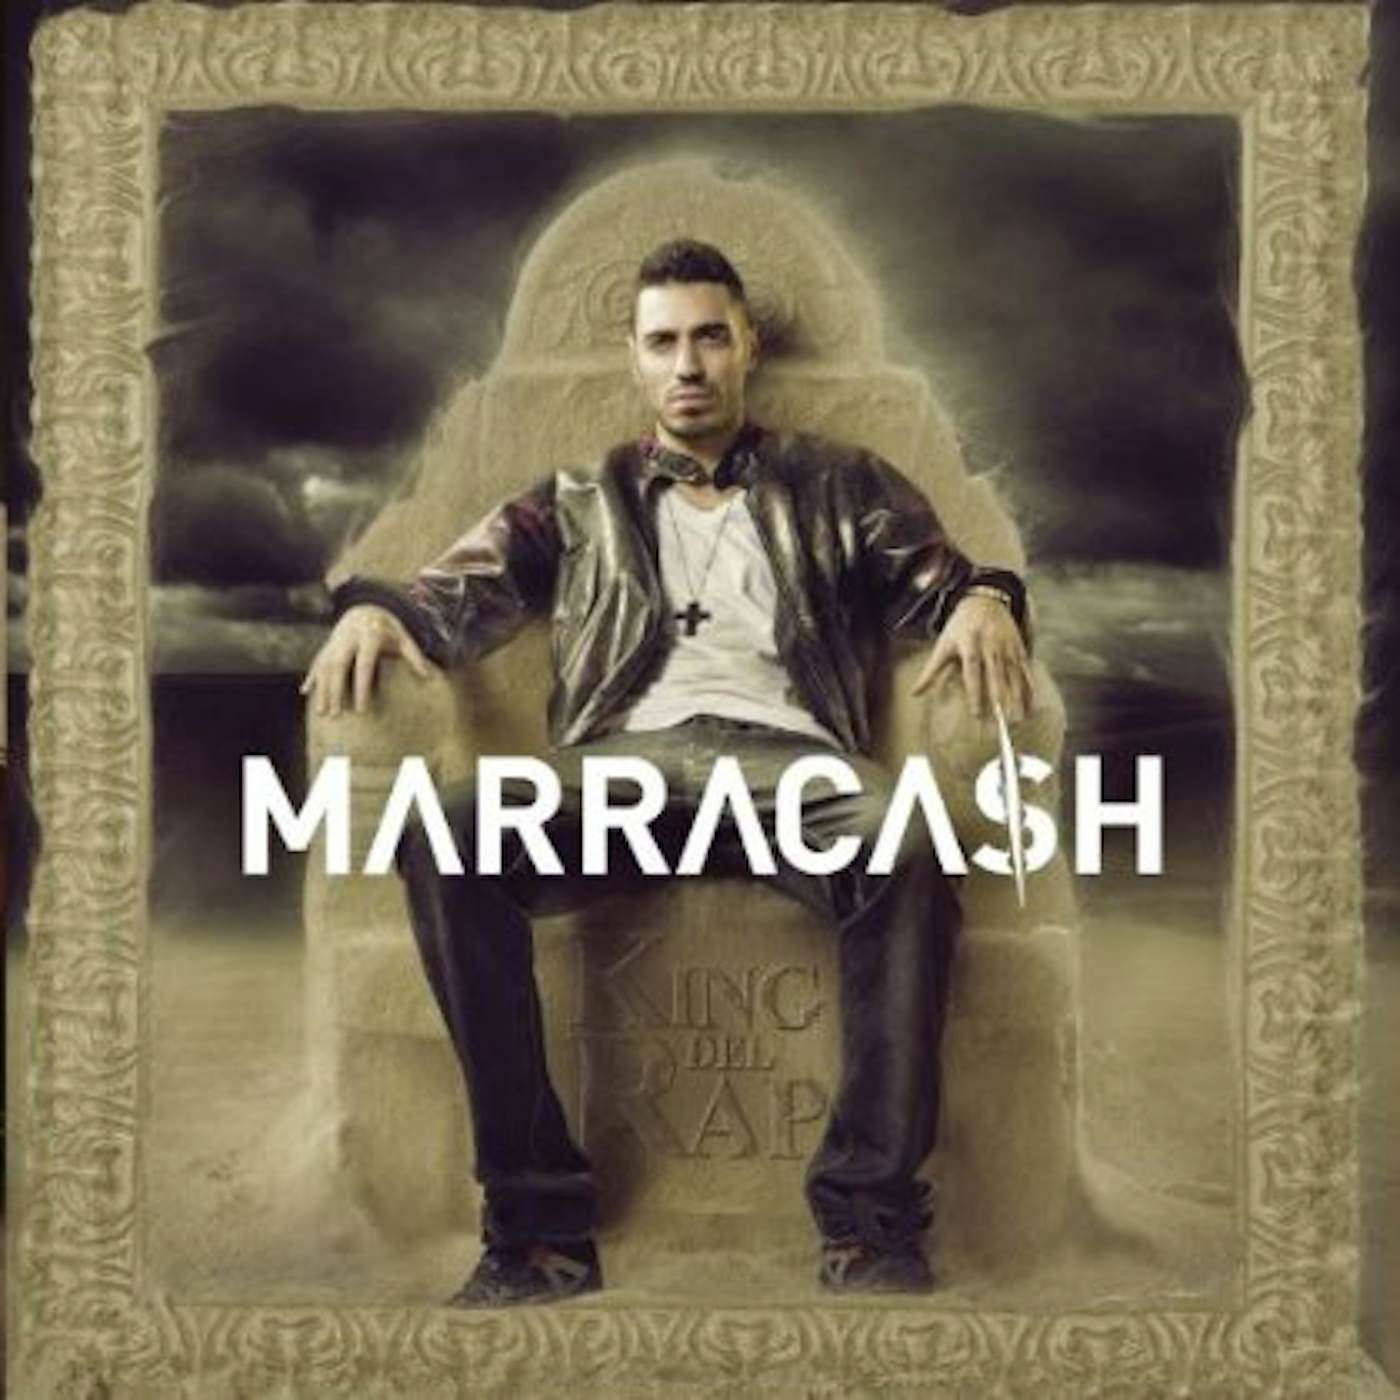 Marracash KING DEL RAP CD